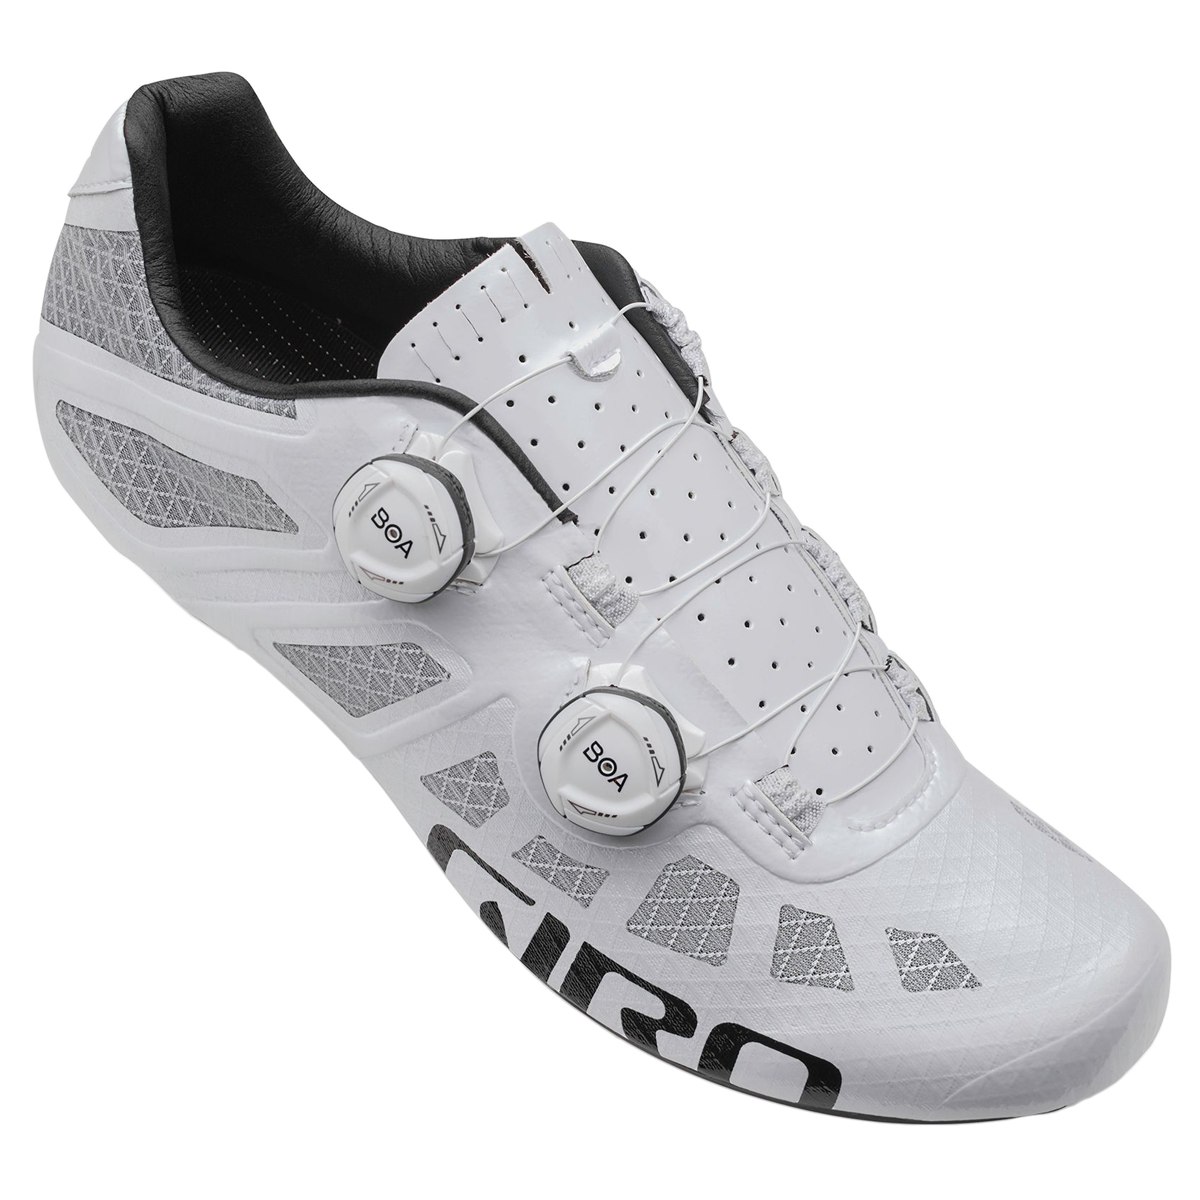 Produktbild von Giro Imperial Rennradschuhe - weiß